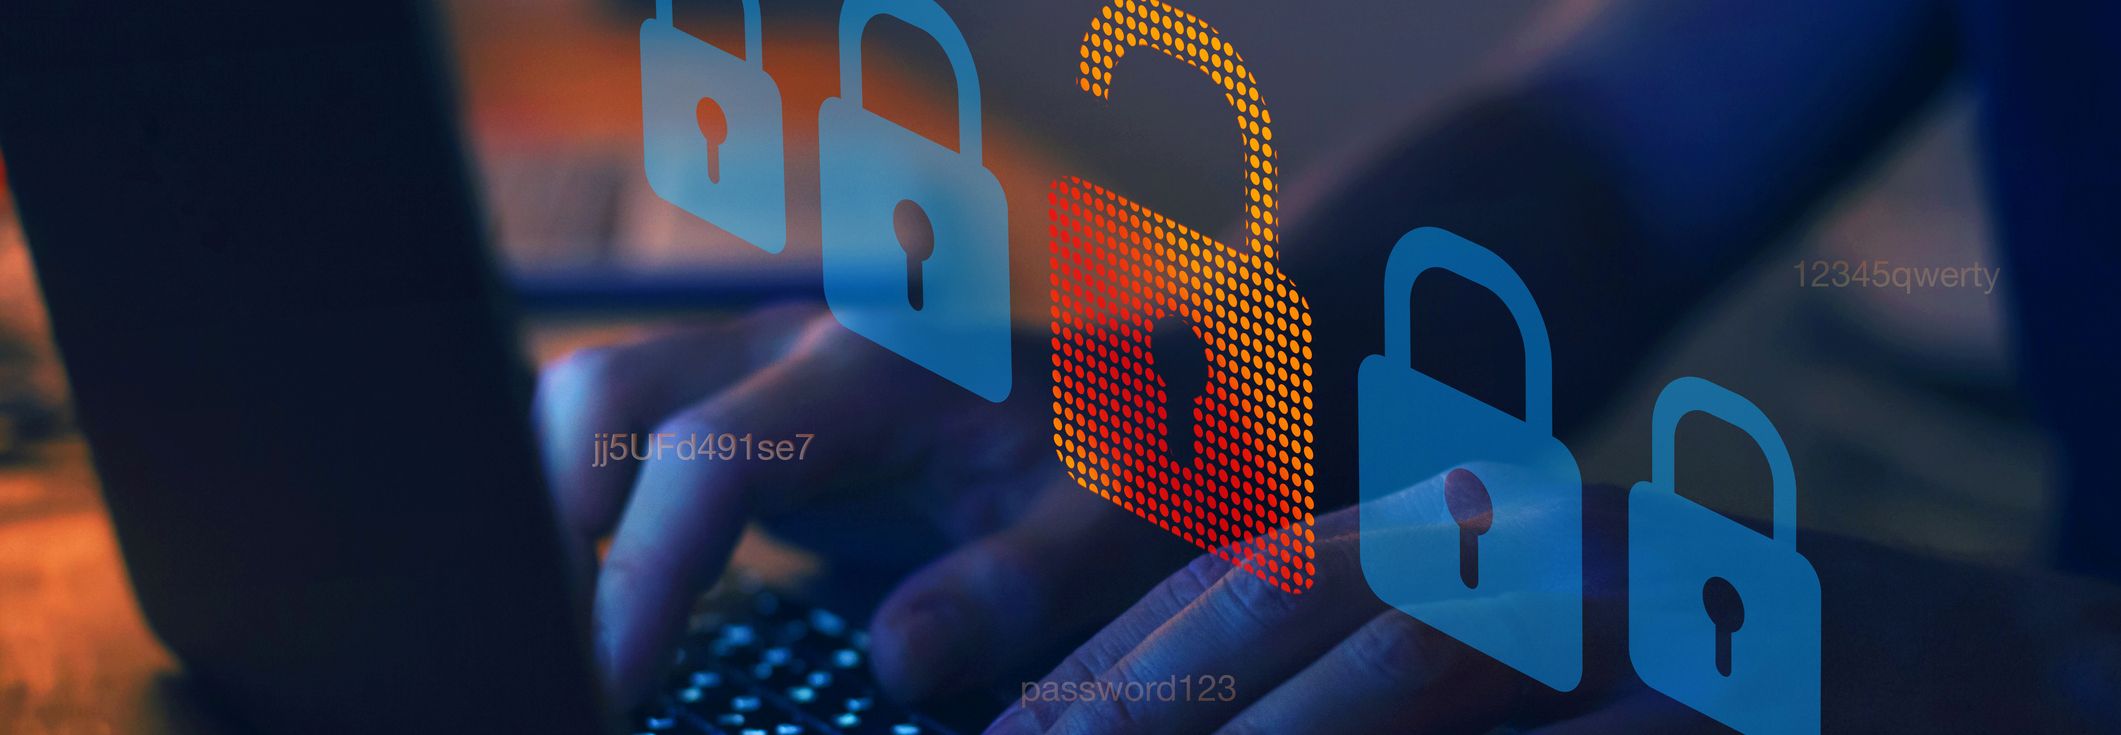 RaidForums database of 480,000 cybercriminals leaked